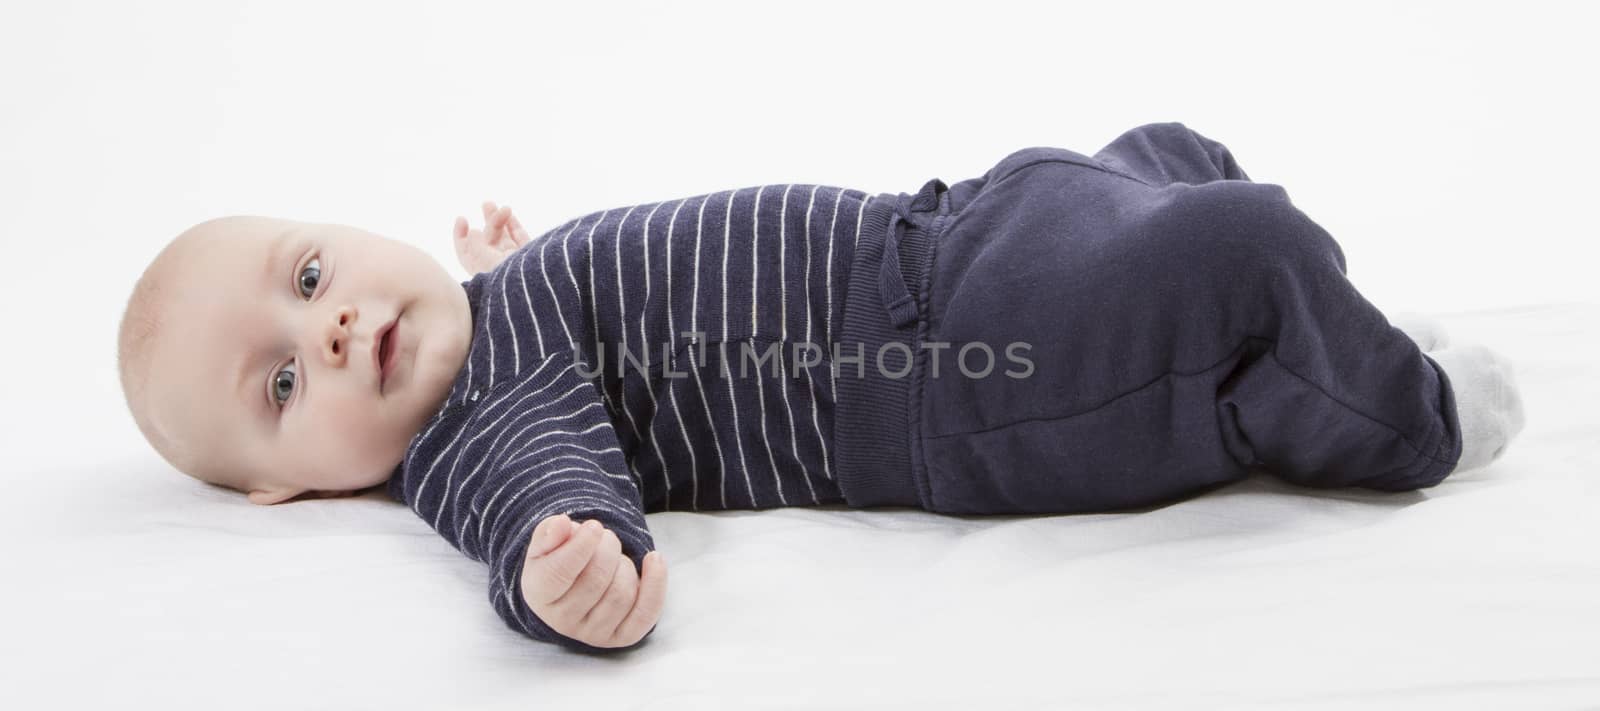 smiling toddler lazing around by gewoldi